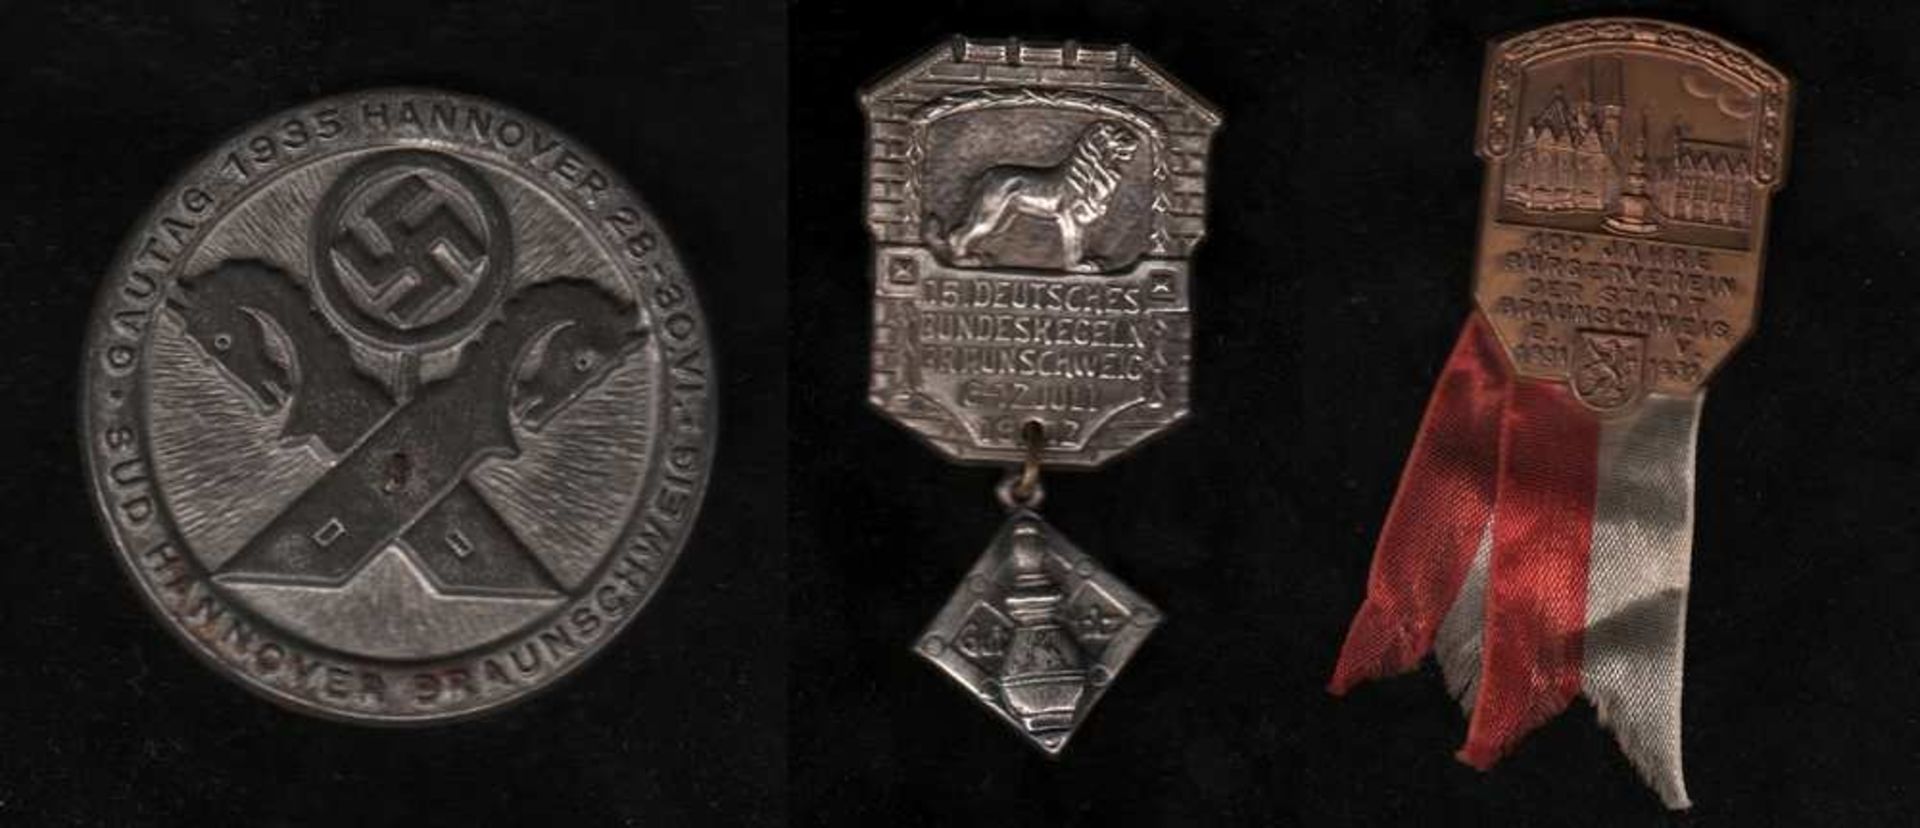 # Braunschweig. Abzeichen aus Metall zum 15. Deutschen Bundeskegeln in Braunschweig 1912. Größe: